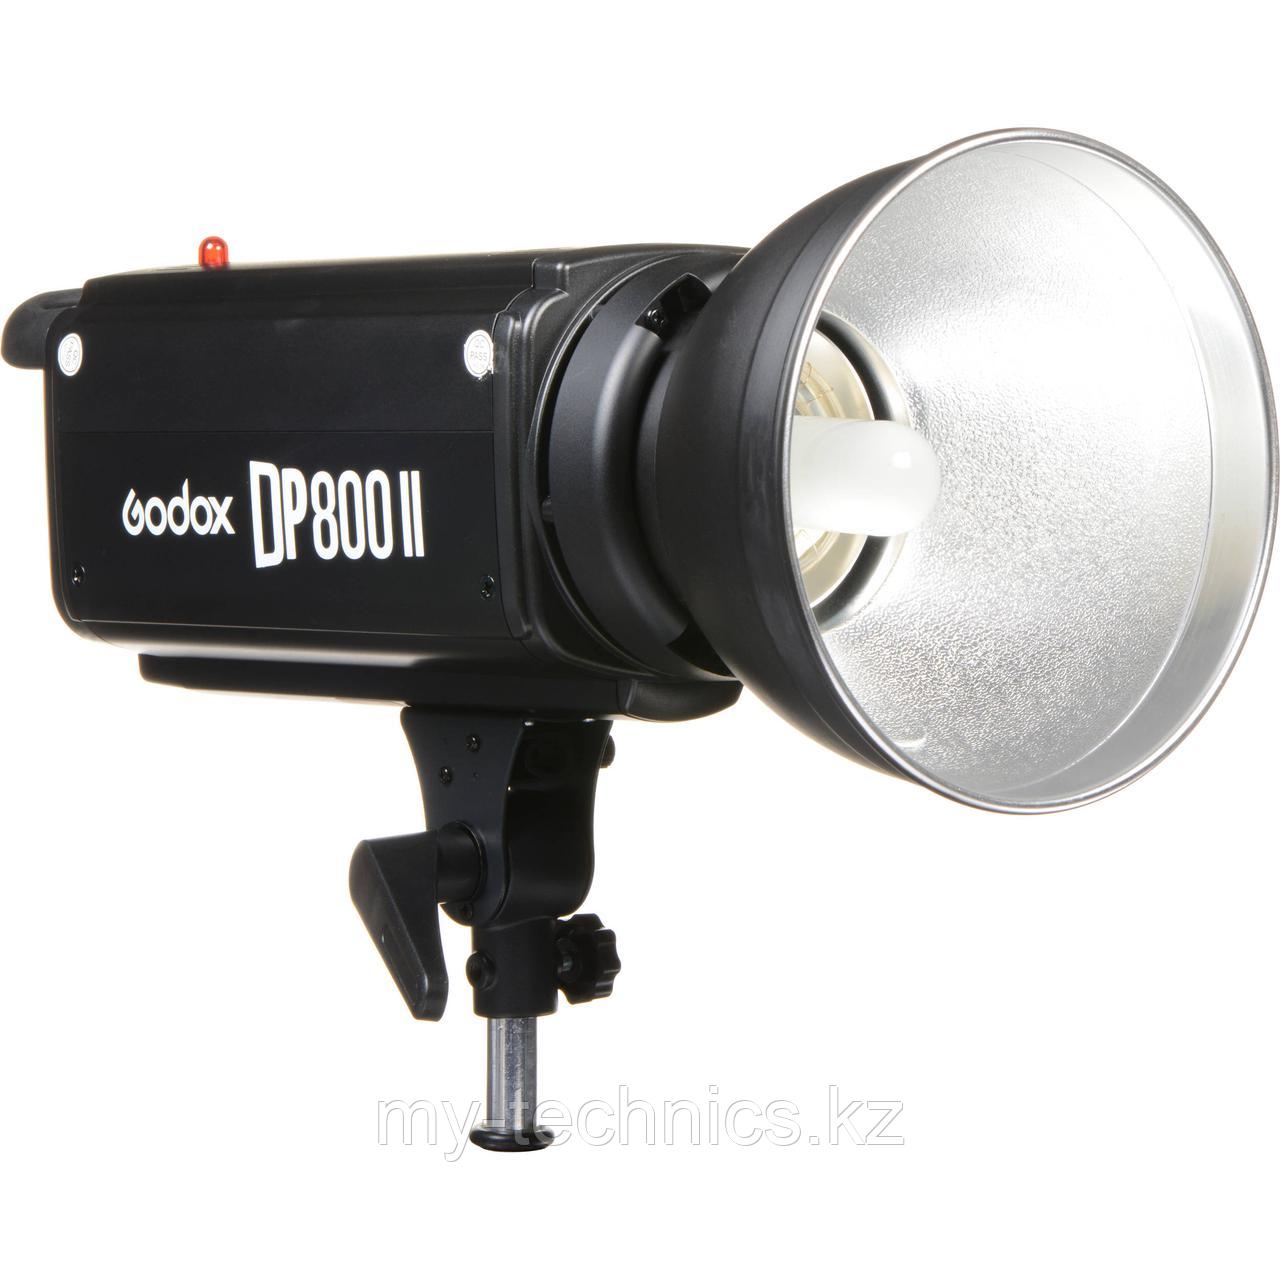 Импульсный свет GODOX DP-800II